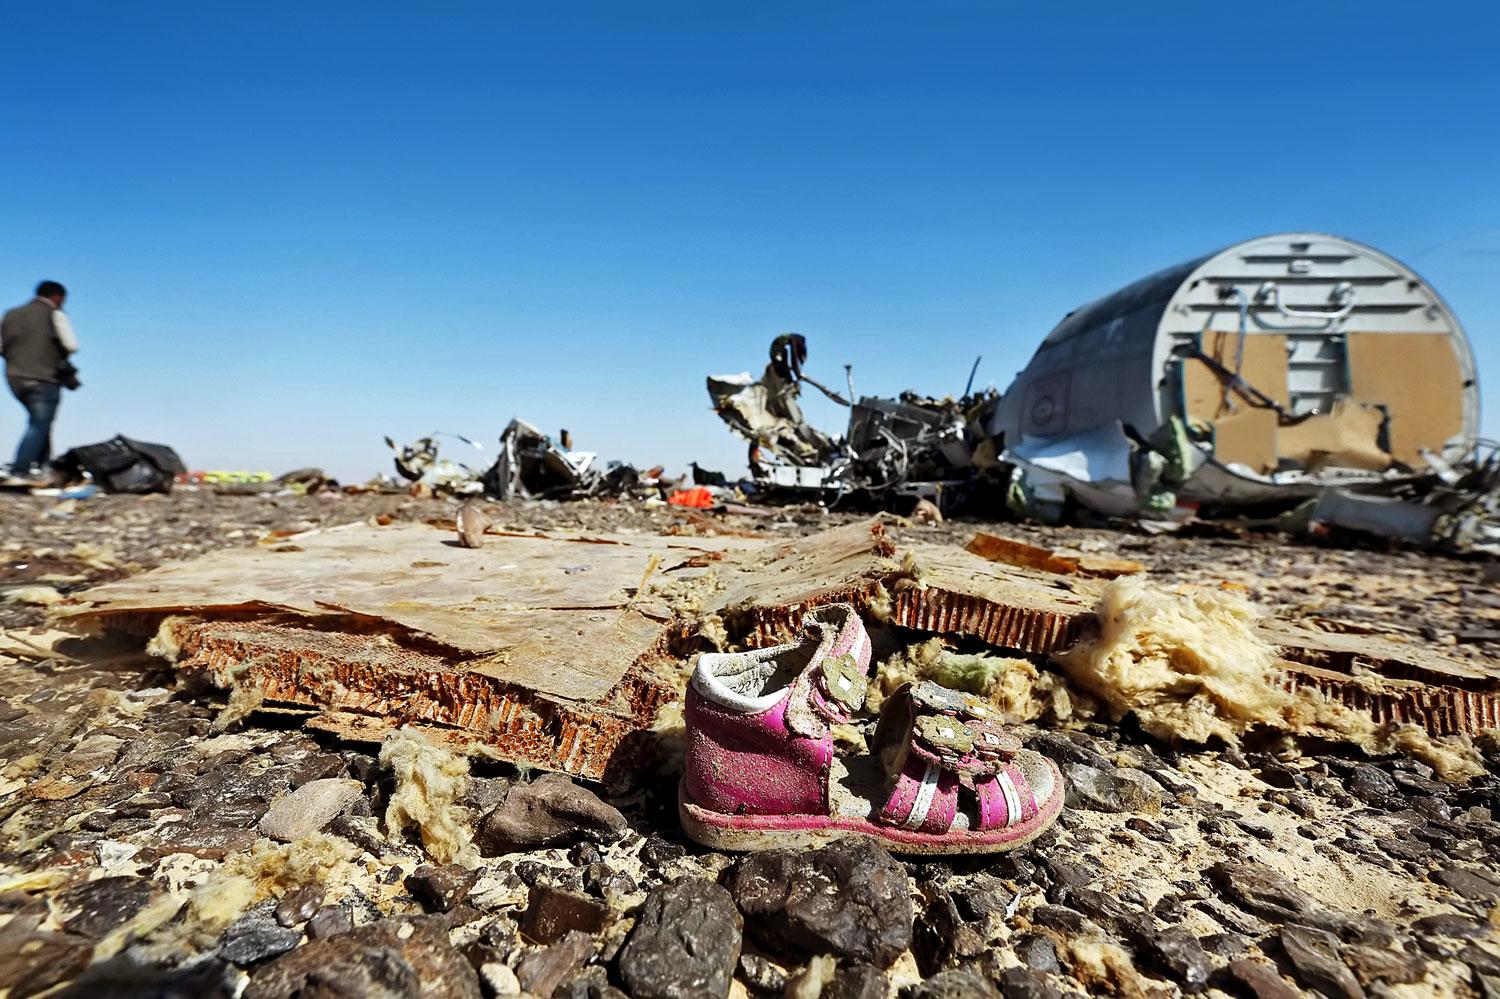 Veszélyben a biztonság. A Kogalimavia légitársaság szombaton lezuhant repülőgépének roncsai Egyiptomban